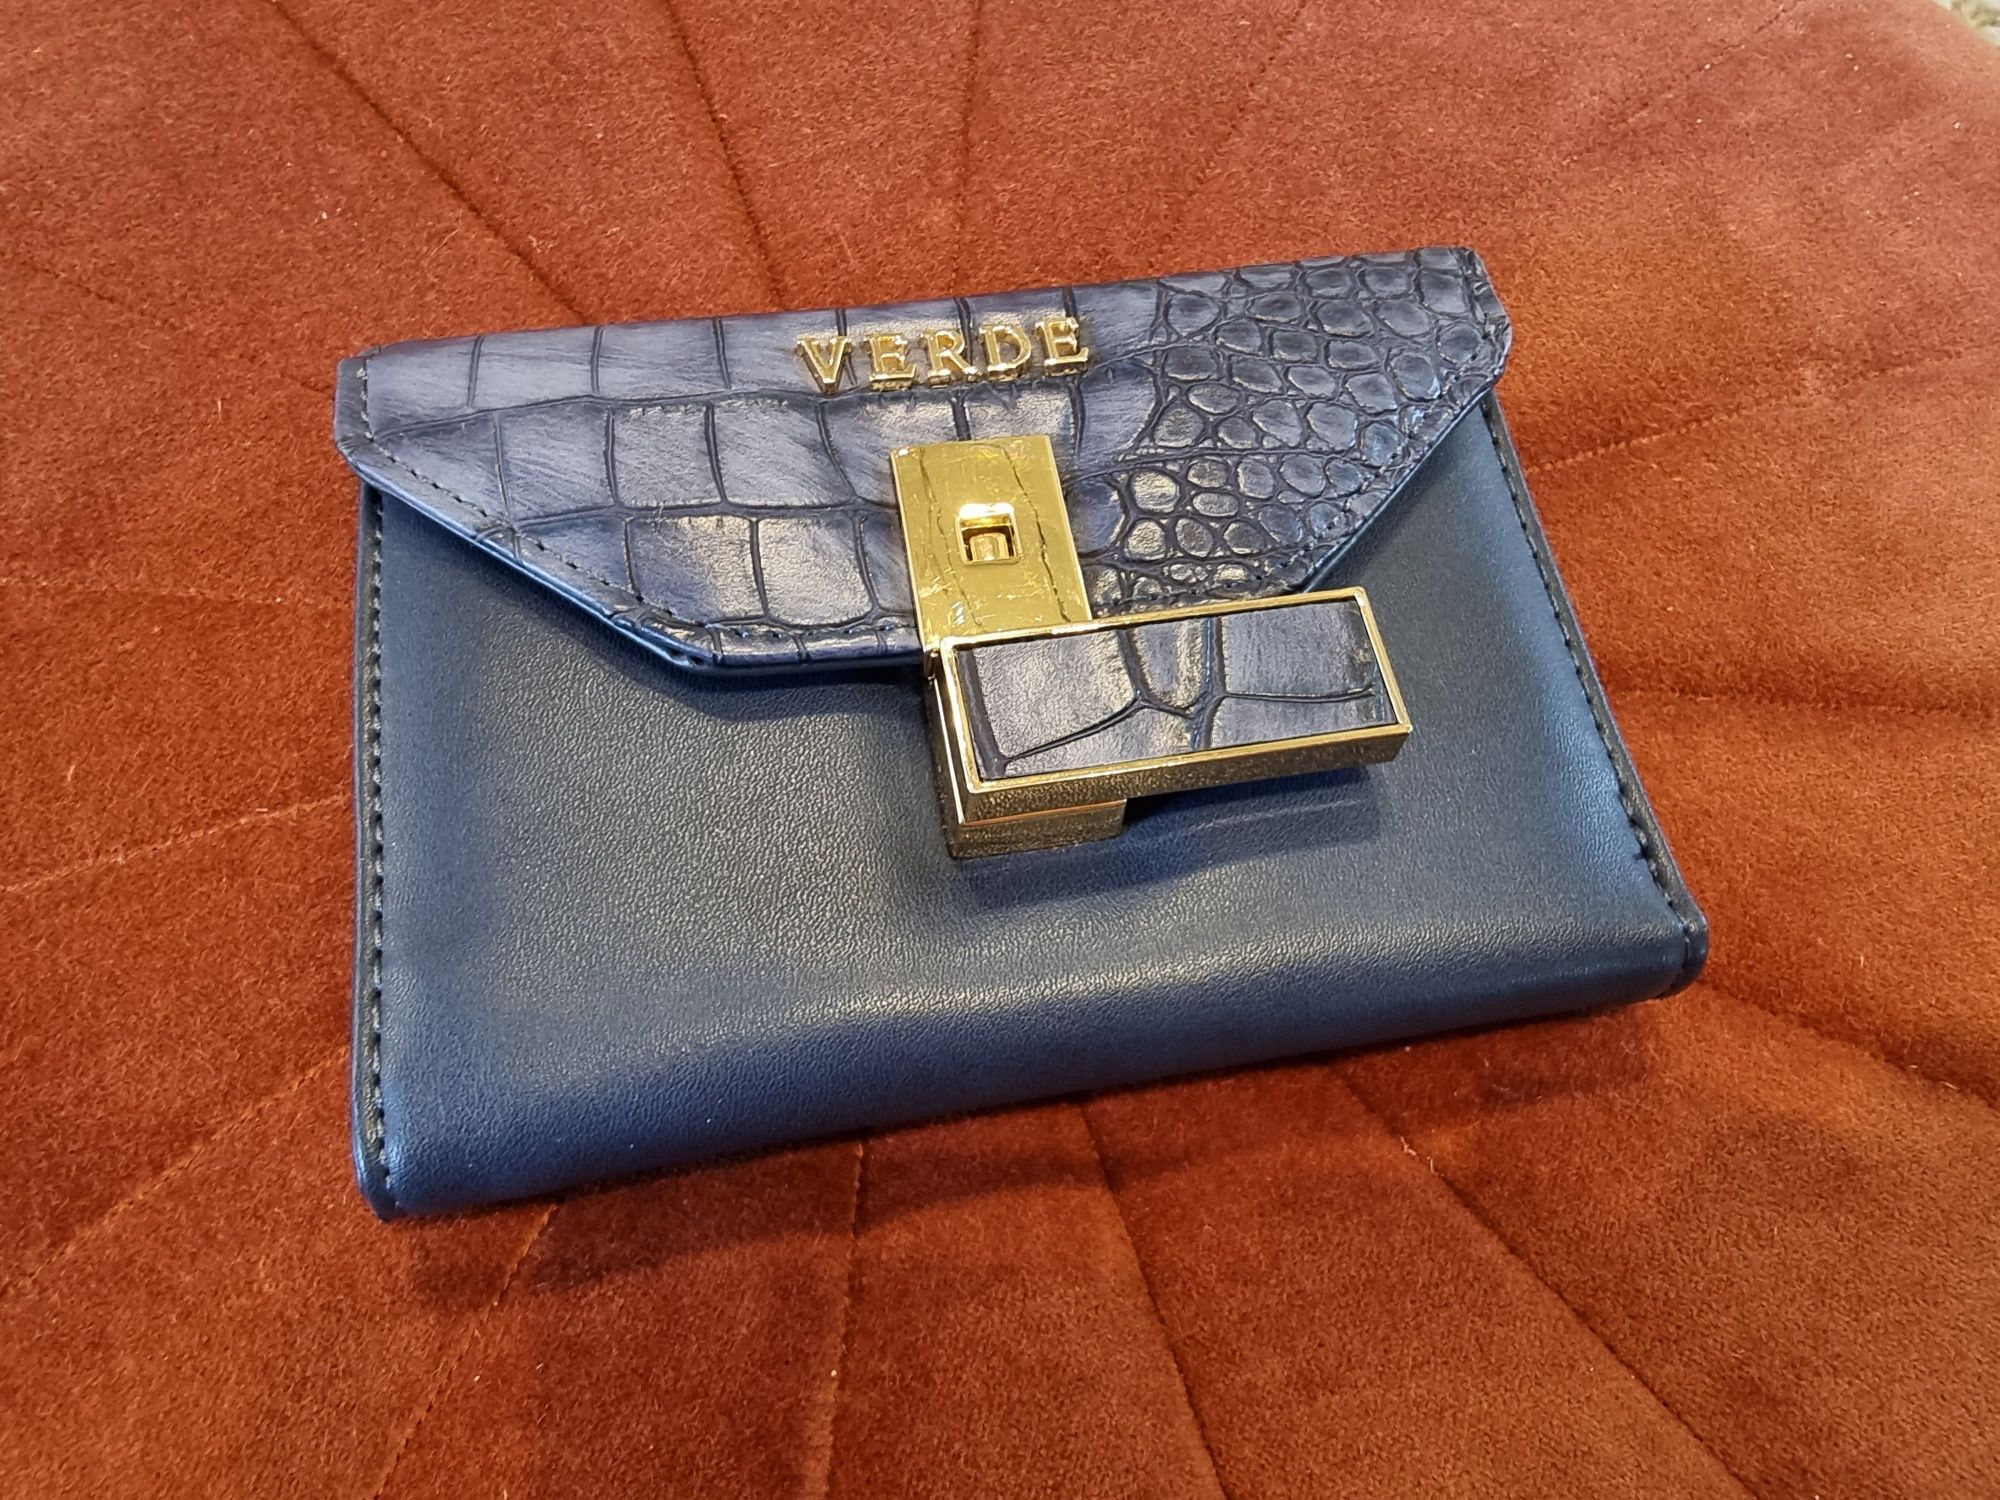 Nowy, granatowy portfel marki VERDE